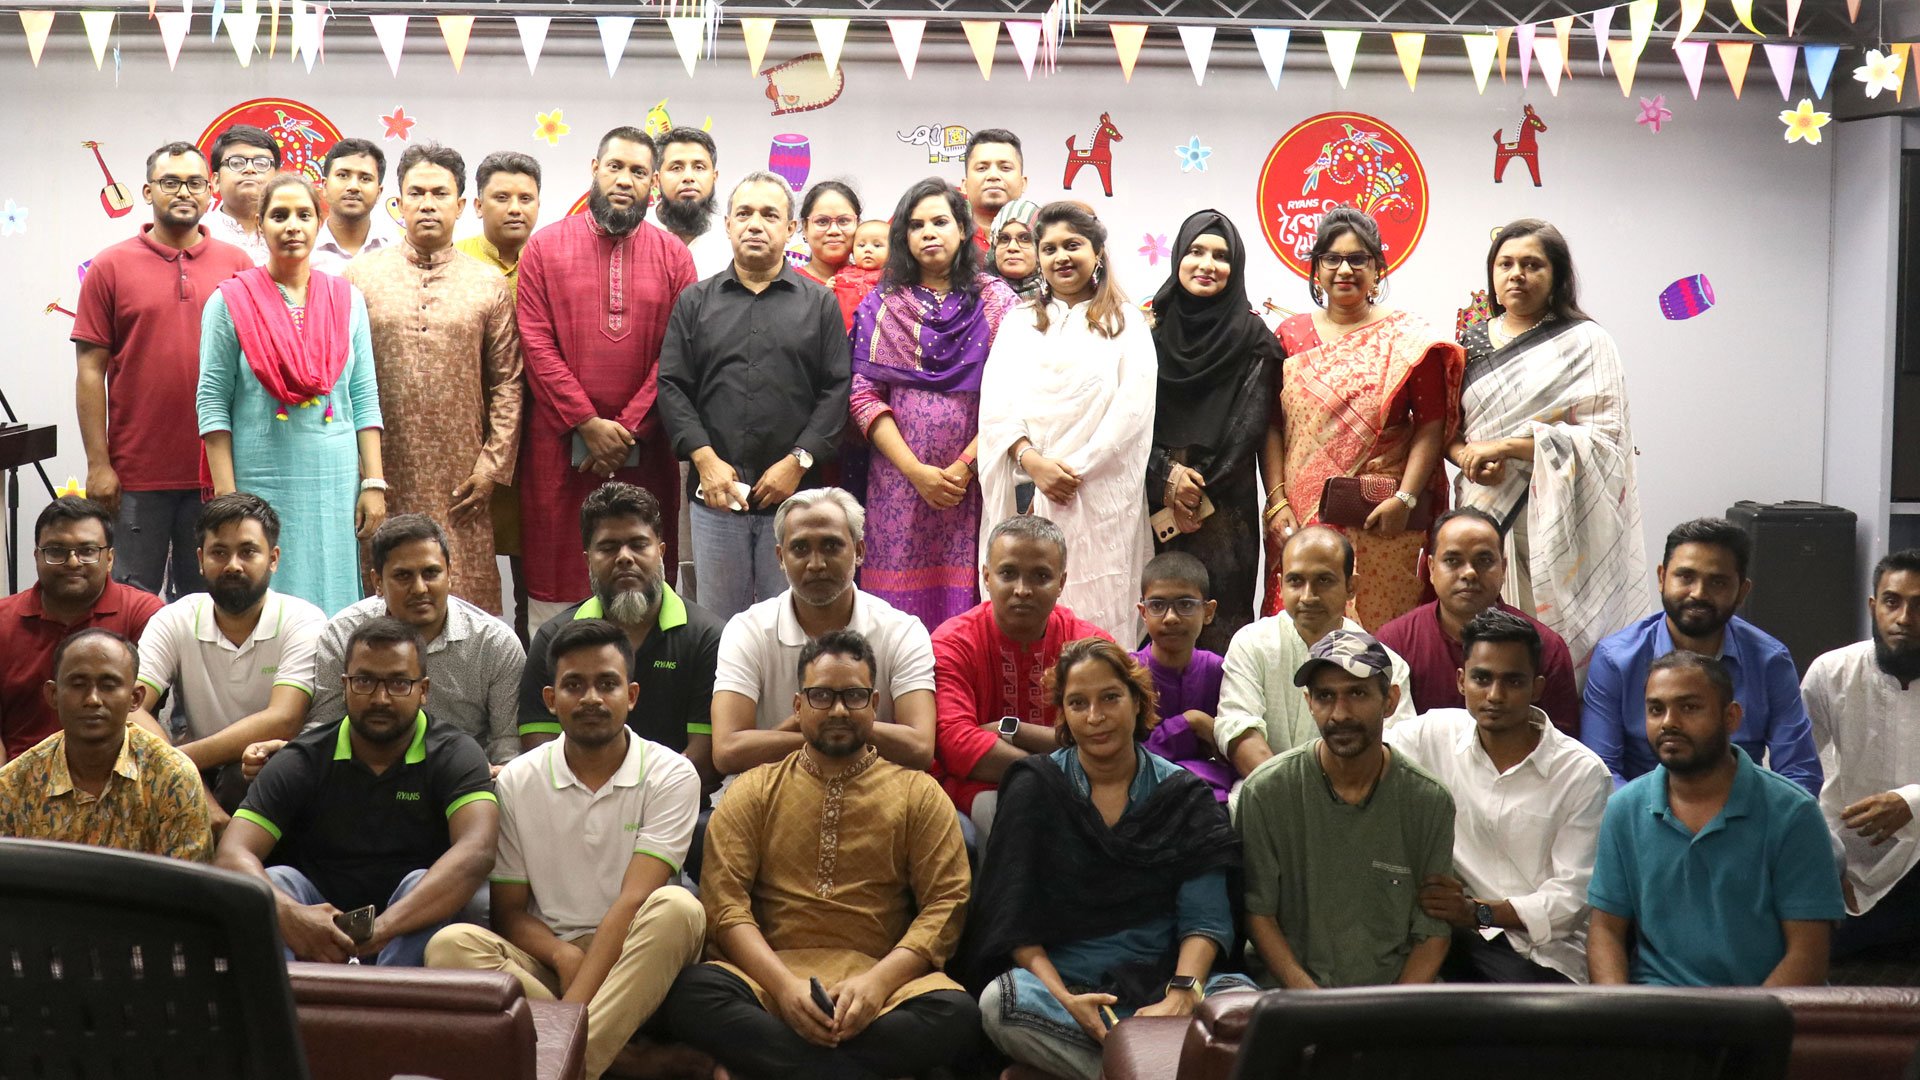 RYANS BOISHAKHI MELA: Celebrating Bengali New Year with Vibrant Cultural Festivities